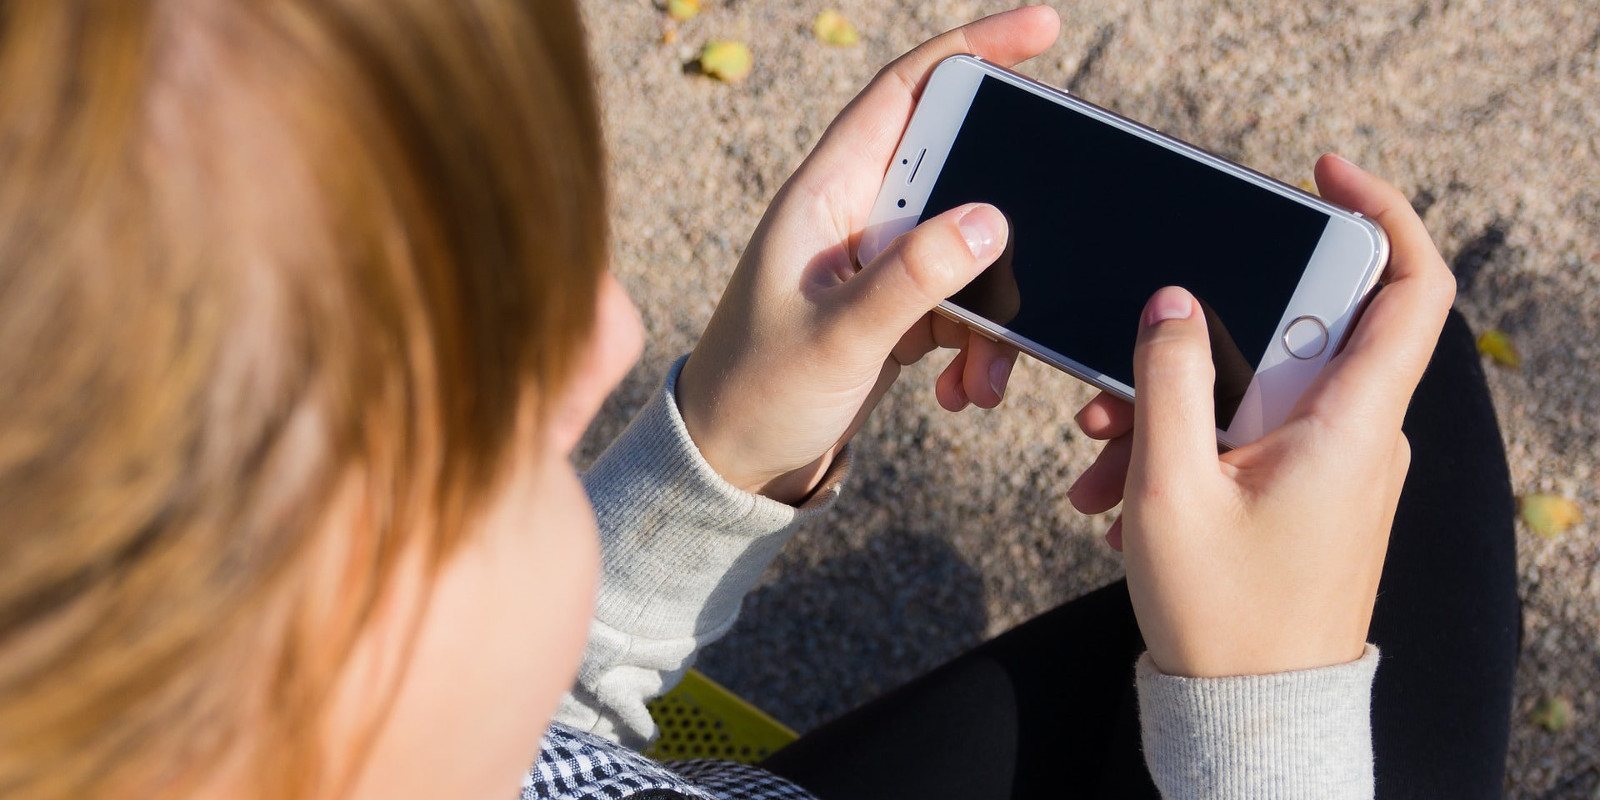 Los smartphones están afectando negativamente a la salud mental de los más jóvenes